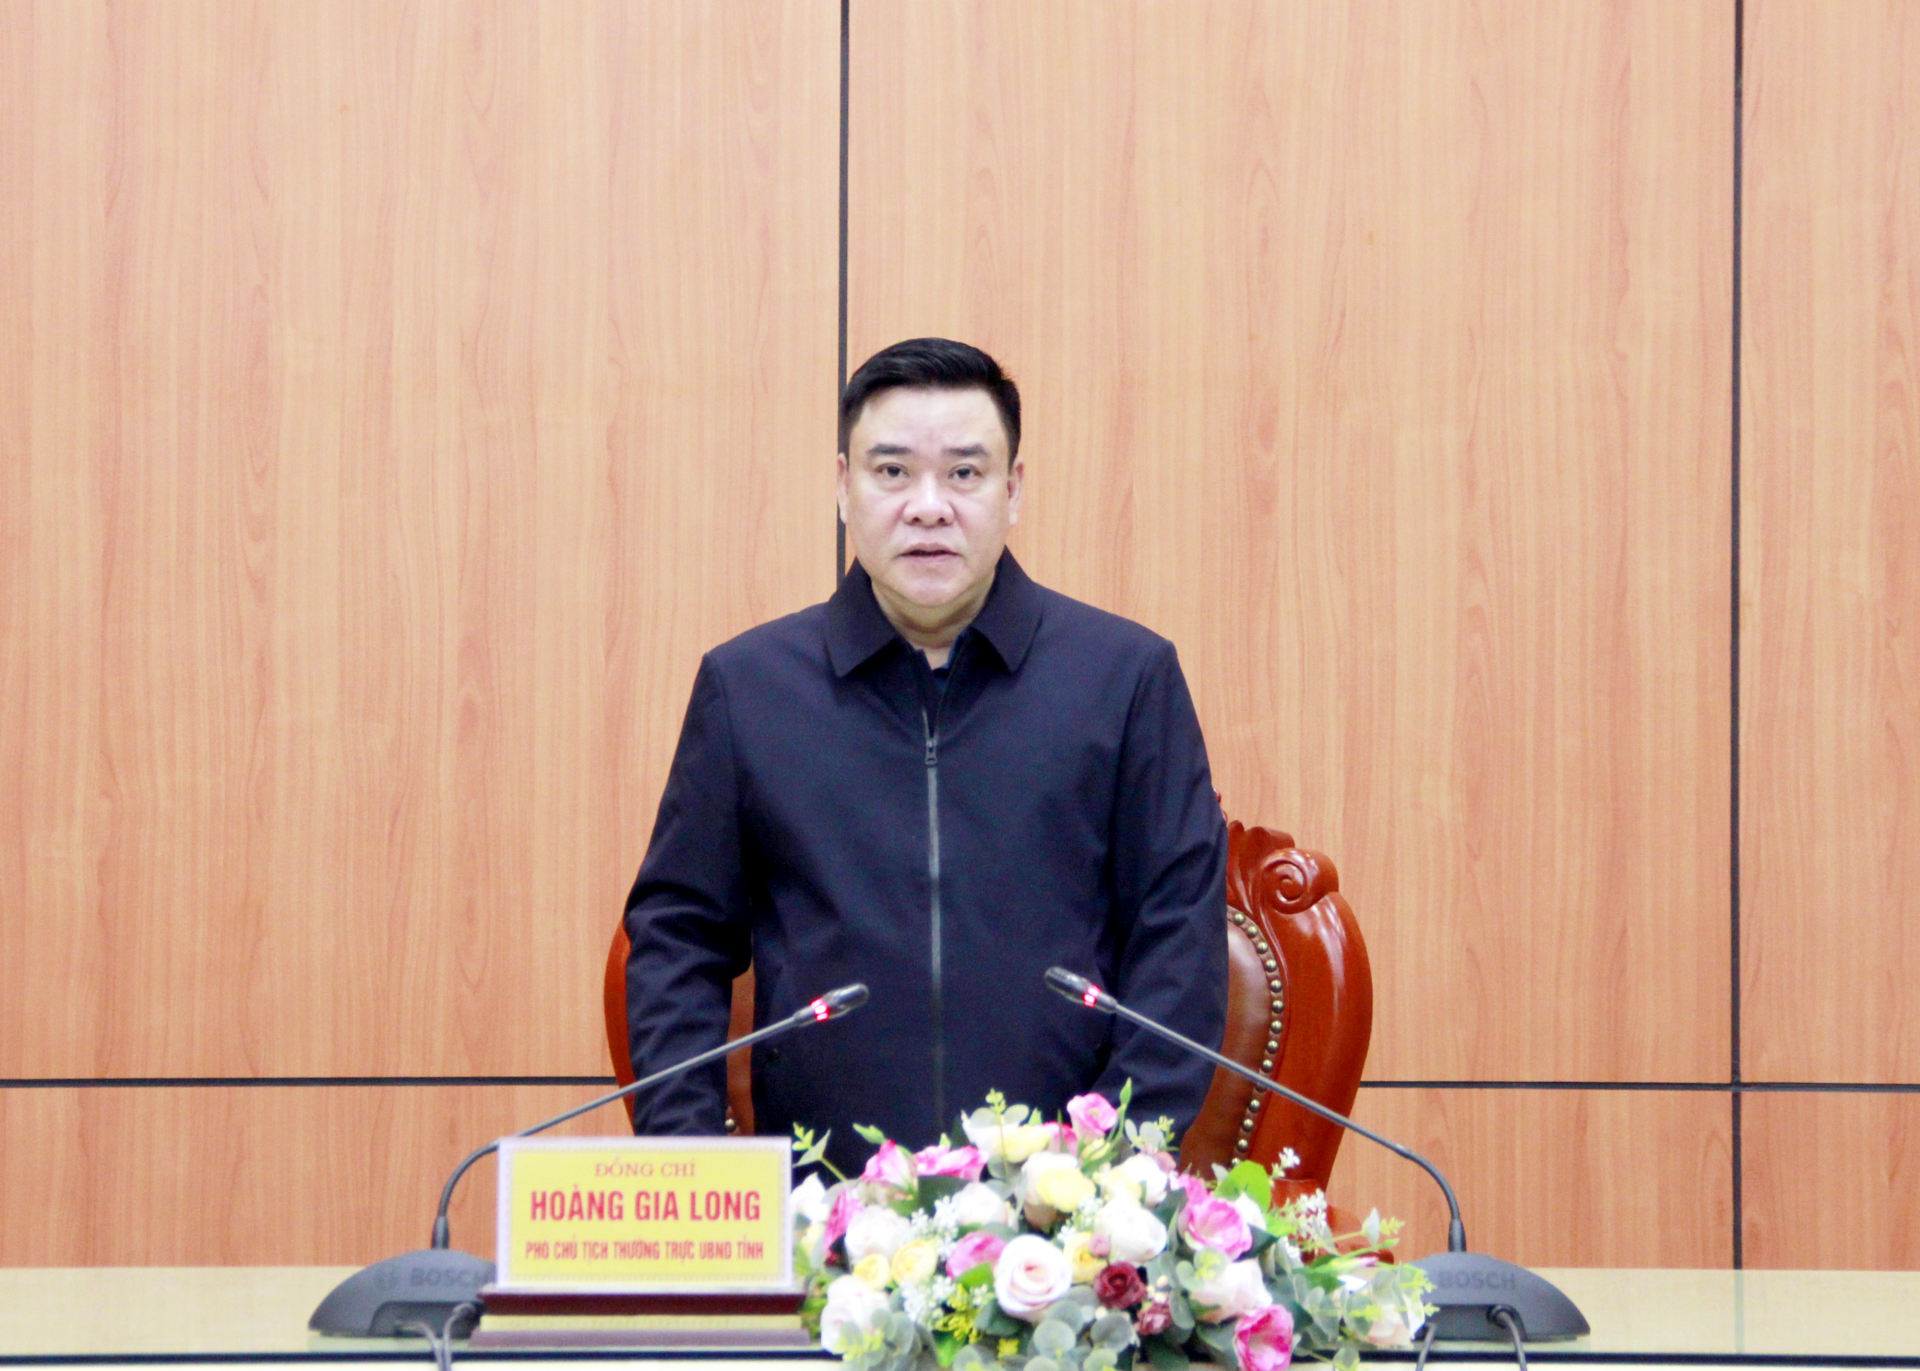 Phó Chủ tịch Thường trực UBND tỉnh Hoàng Gia Long phát biểu tại cuộc họp.